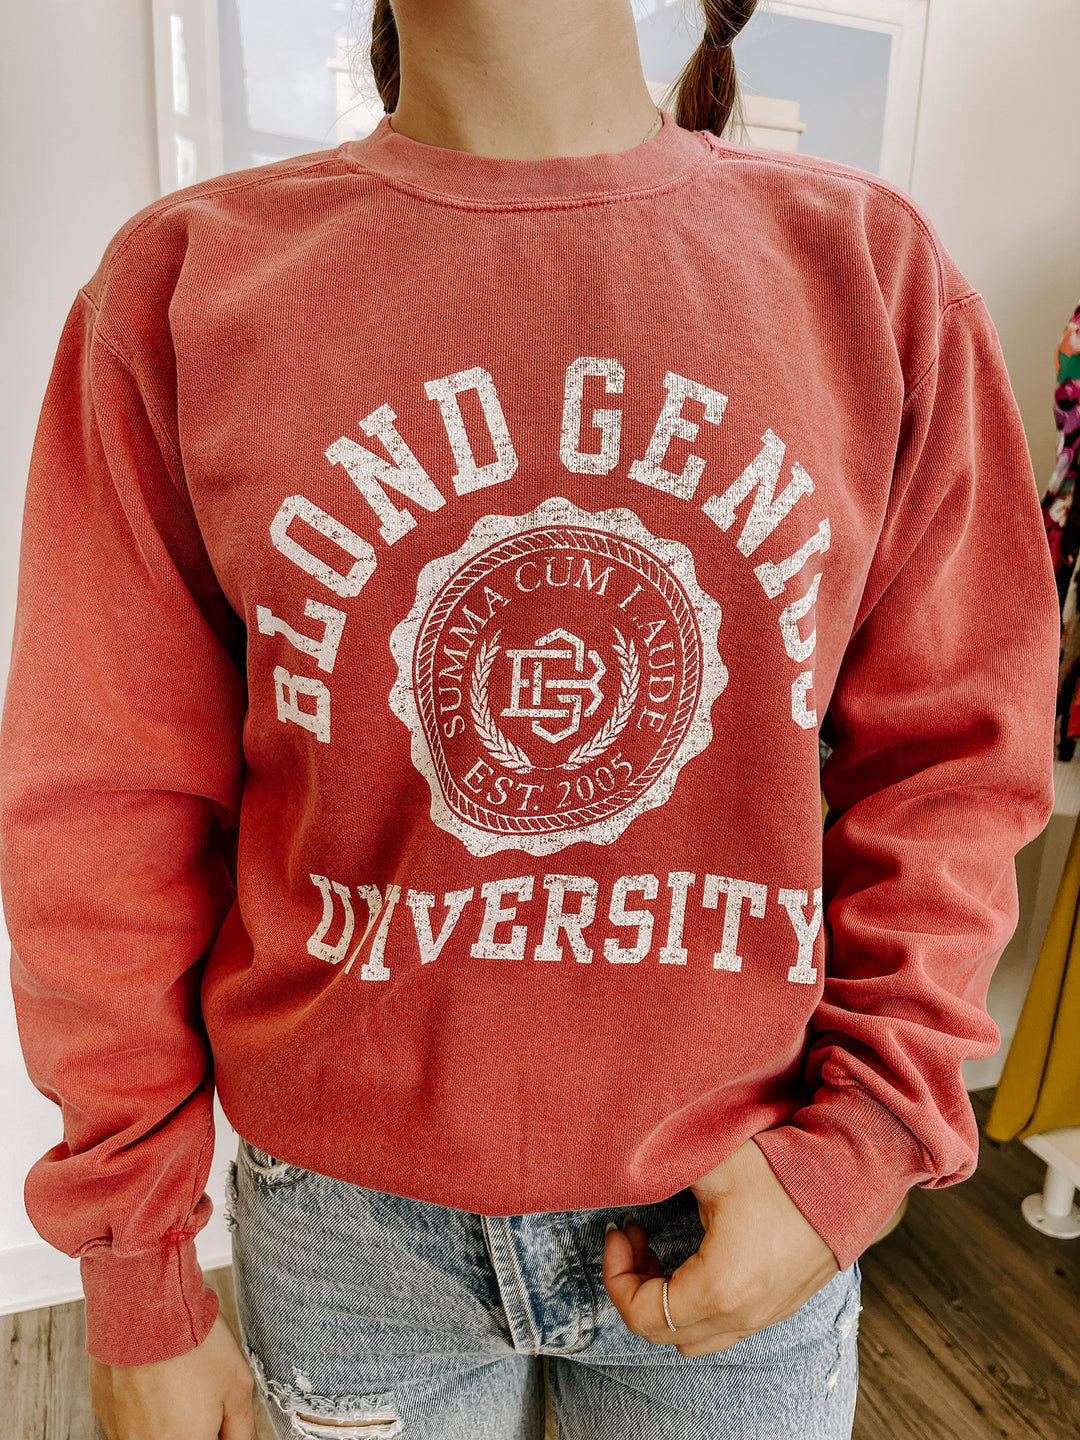 Blond Genius - Blond Genius University in Crimson with White